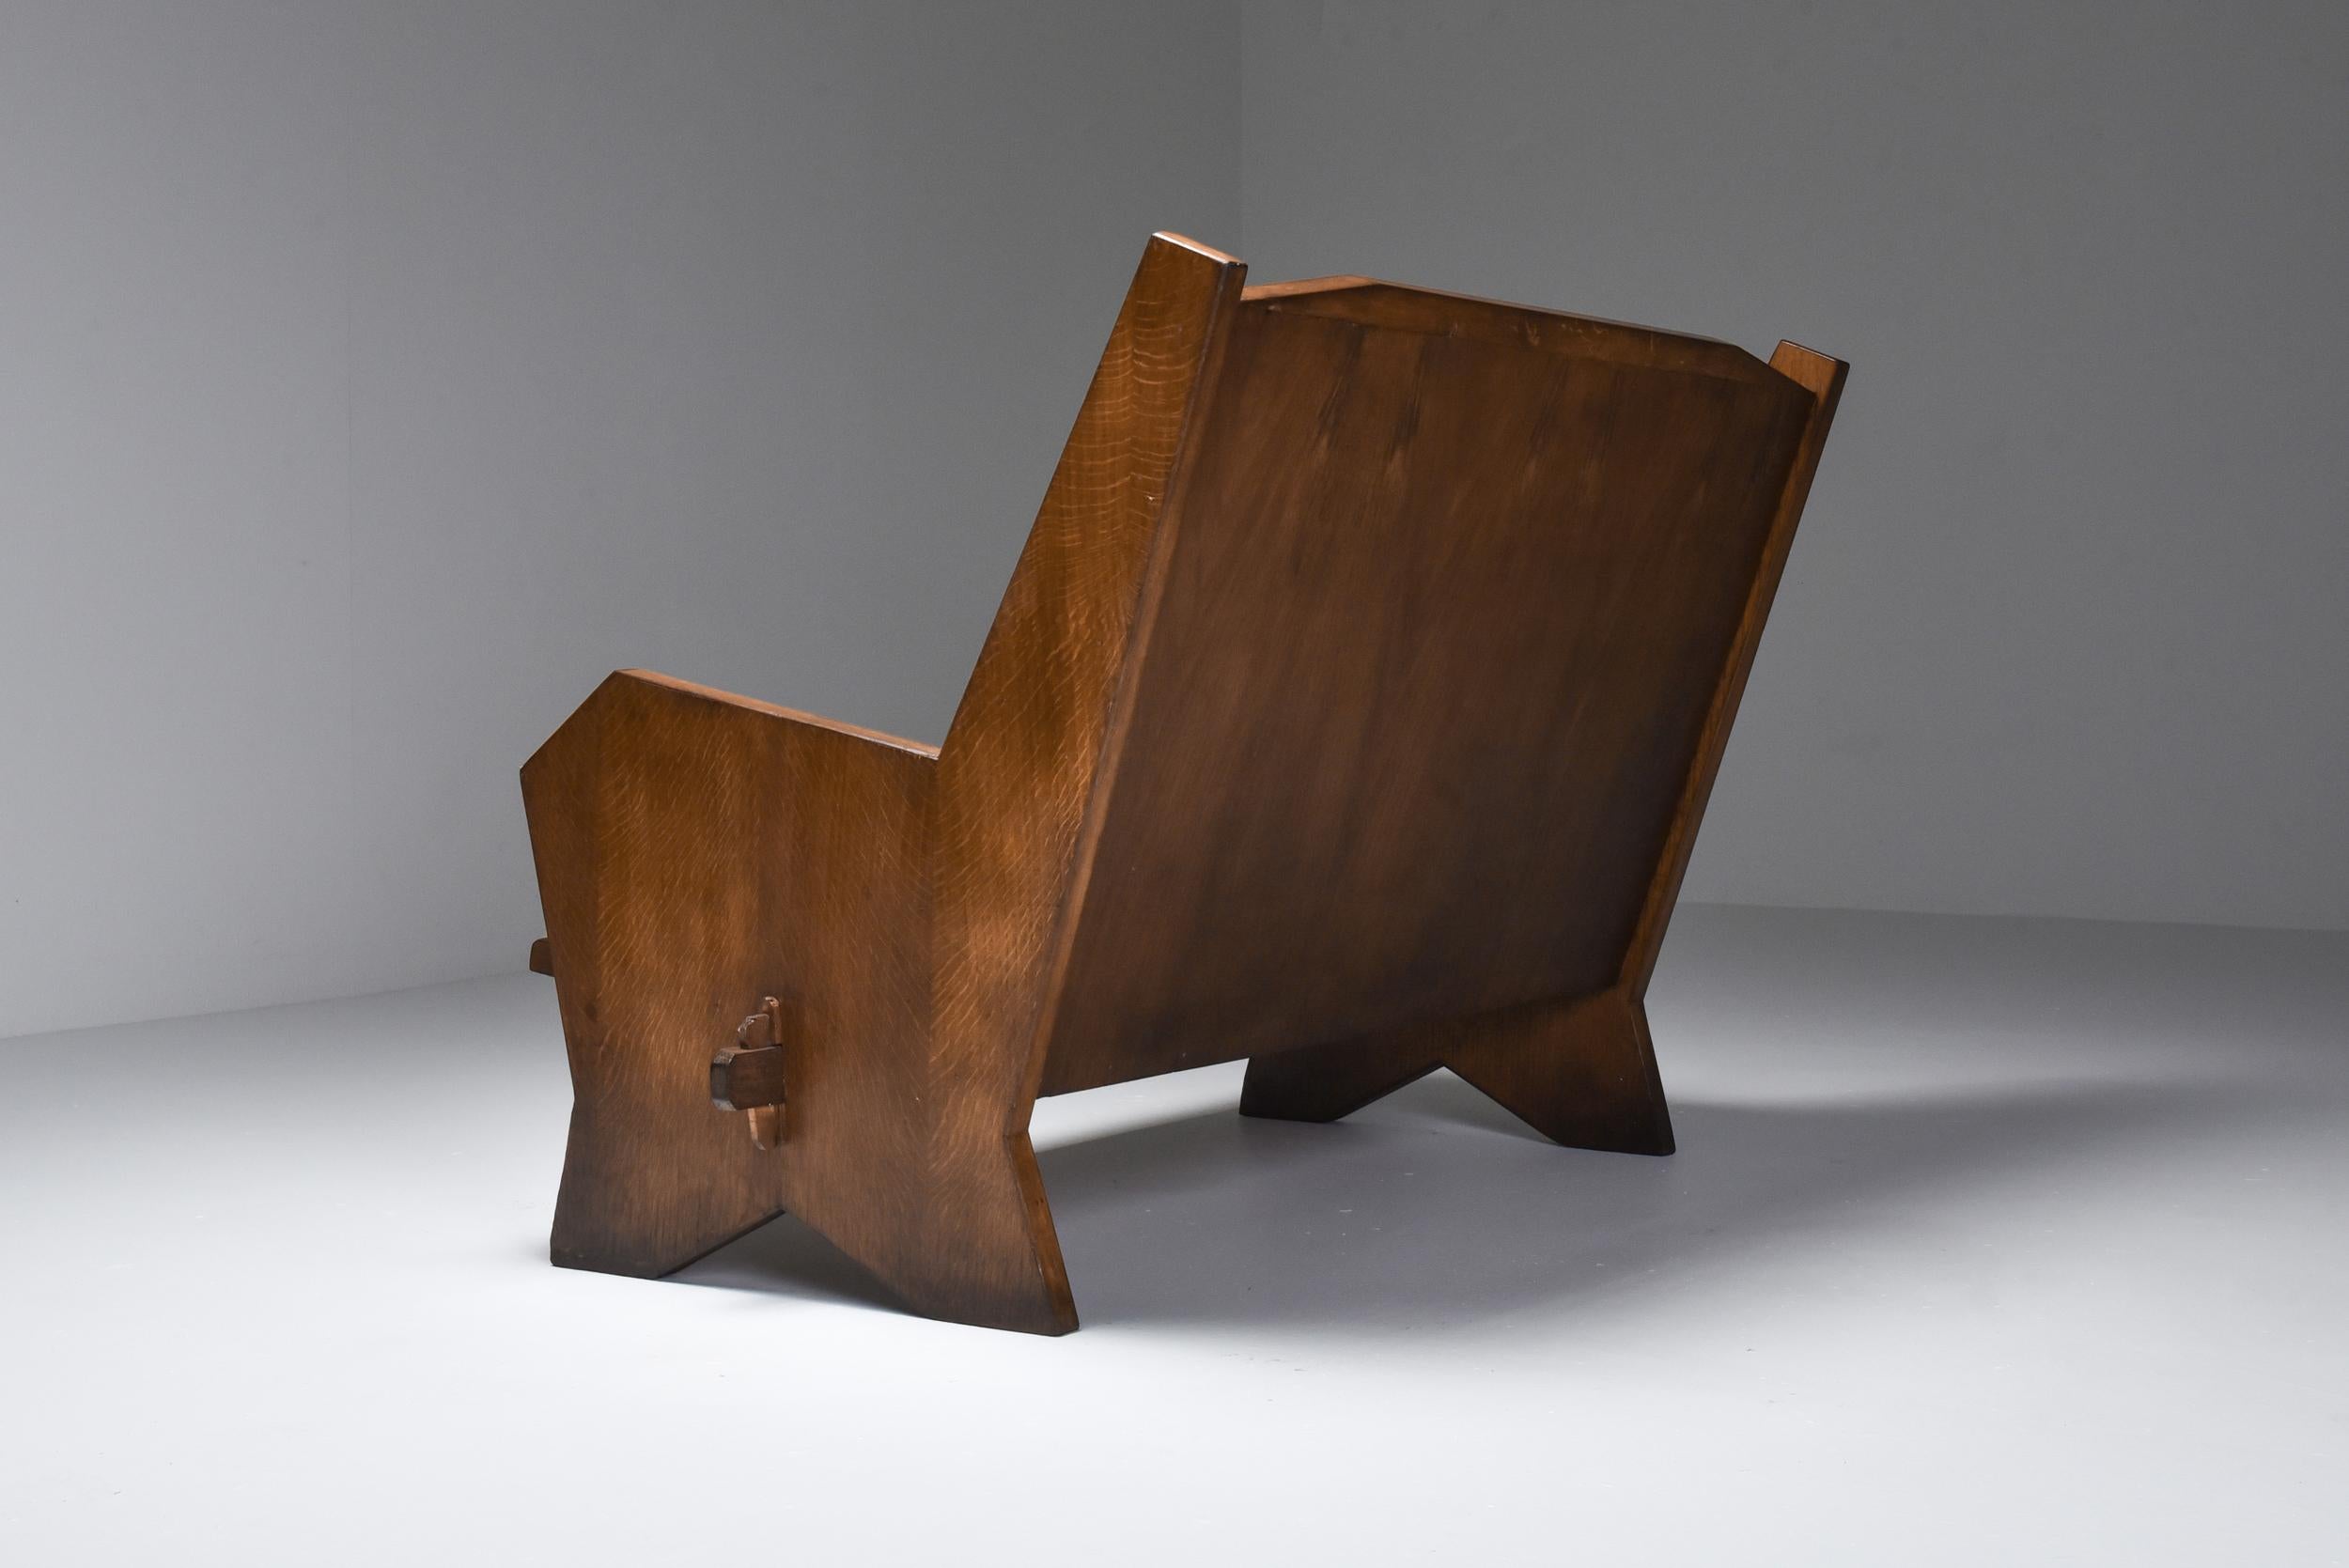 Italienischer kubistischer Sessel aus den 1940er Jahren, eine harmonische Mischung aus Form und Funktion. Sein unverwechselbares Design und sein gemütlicher Komfort machen ihn zu einer beeindruckenden Ergänzung für jede Einrichtung. Dieses rustikale